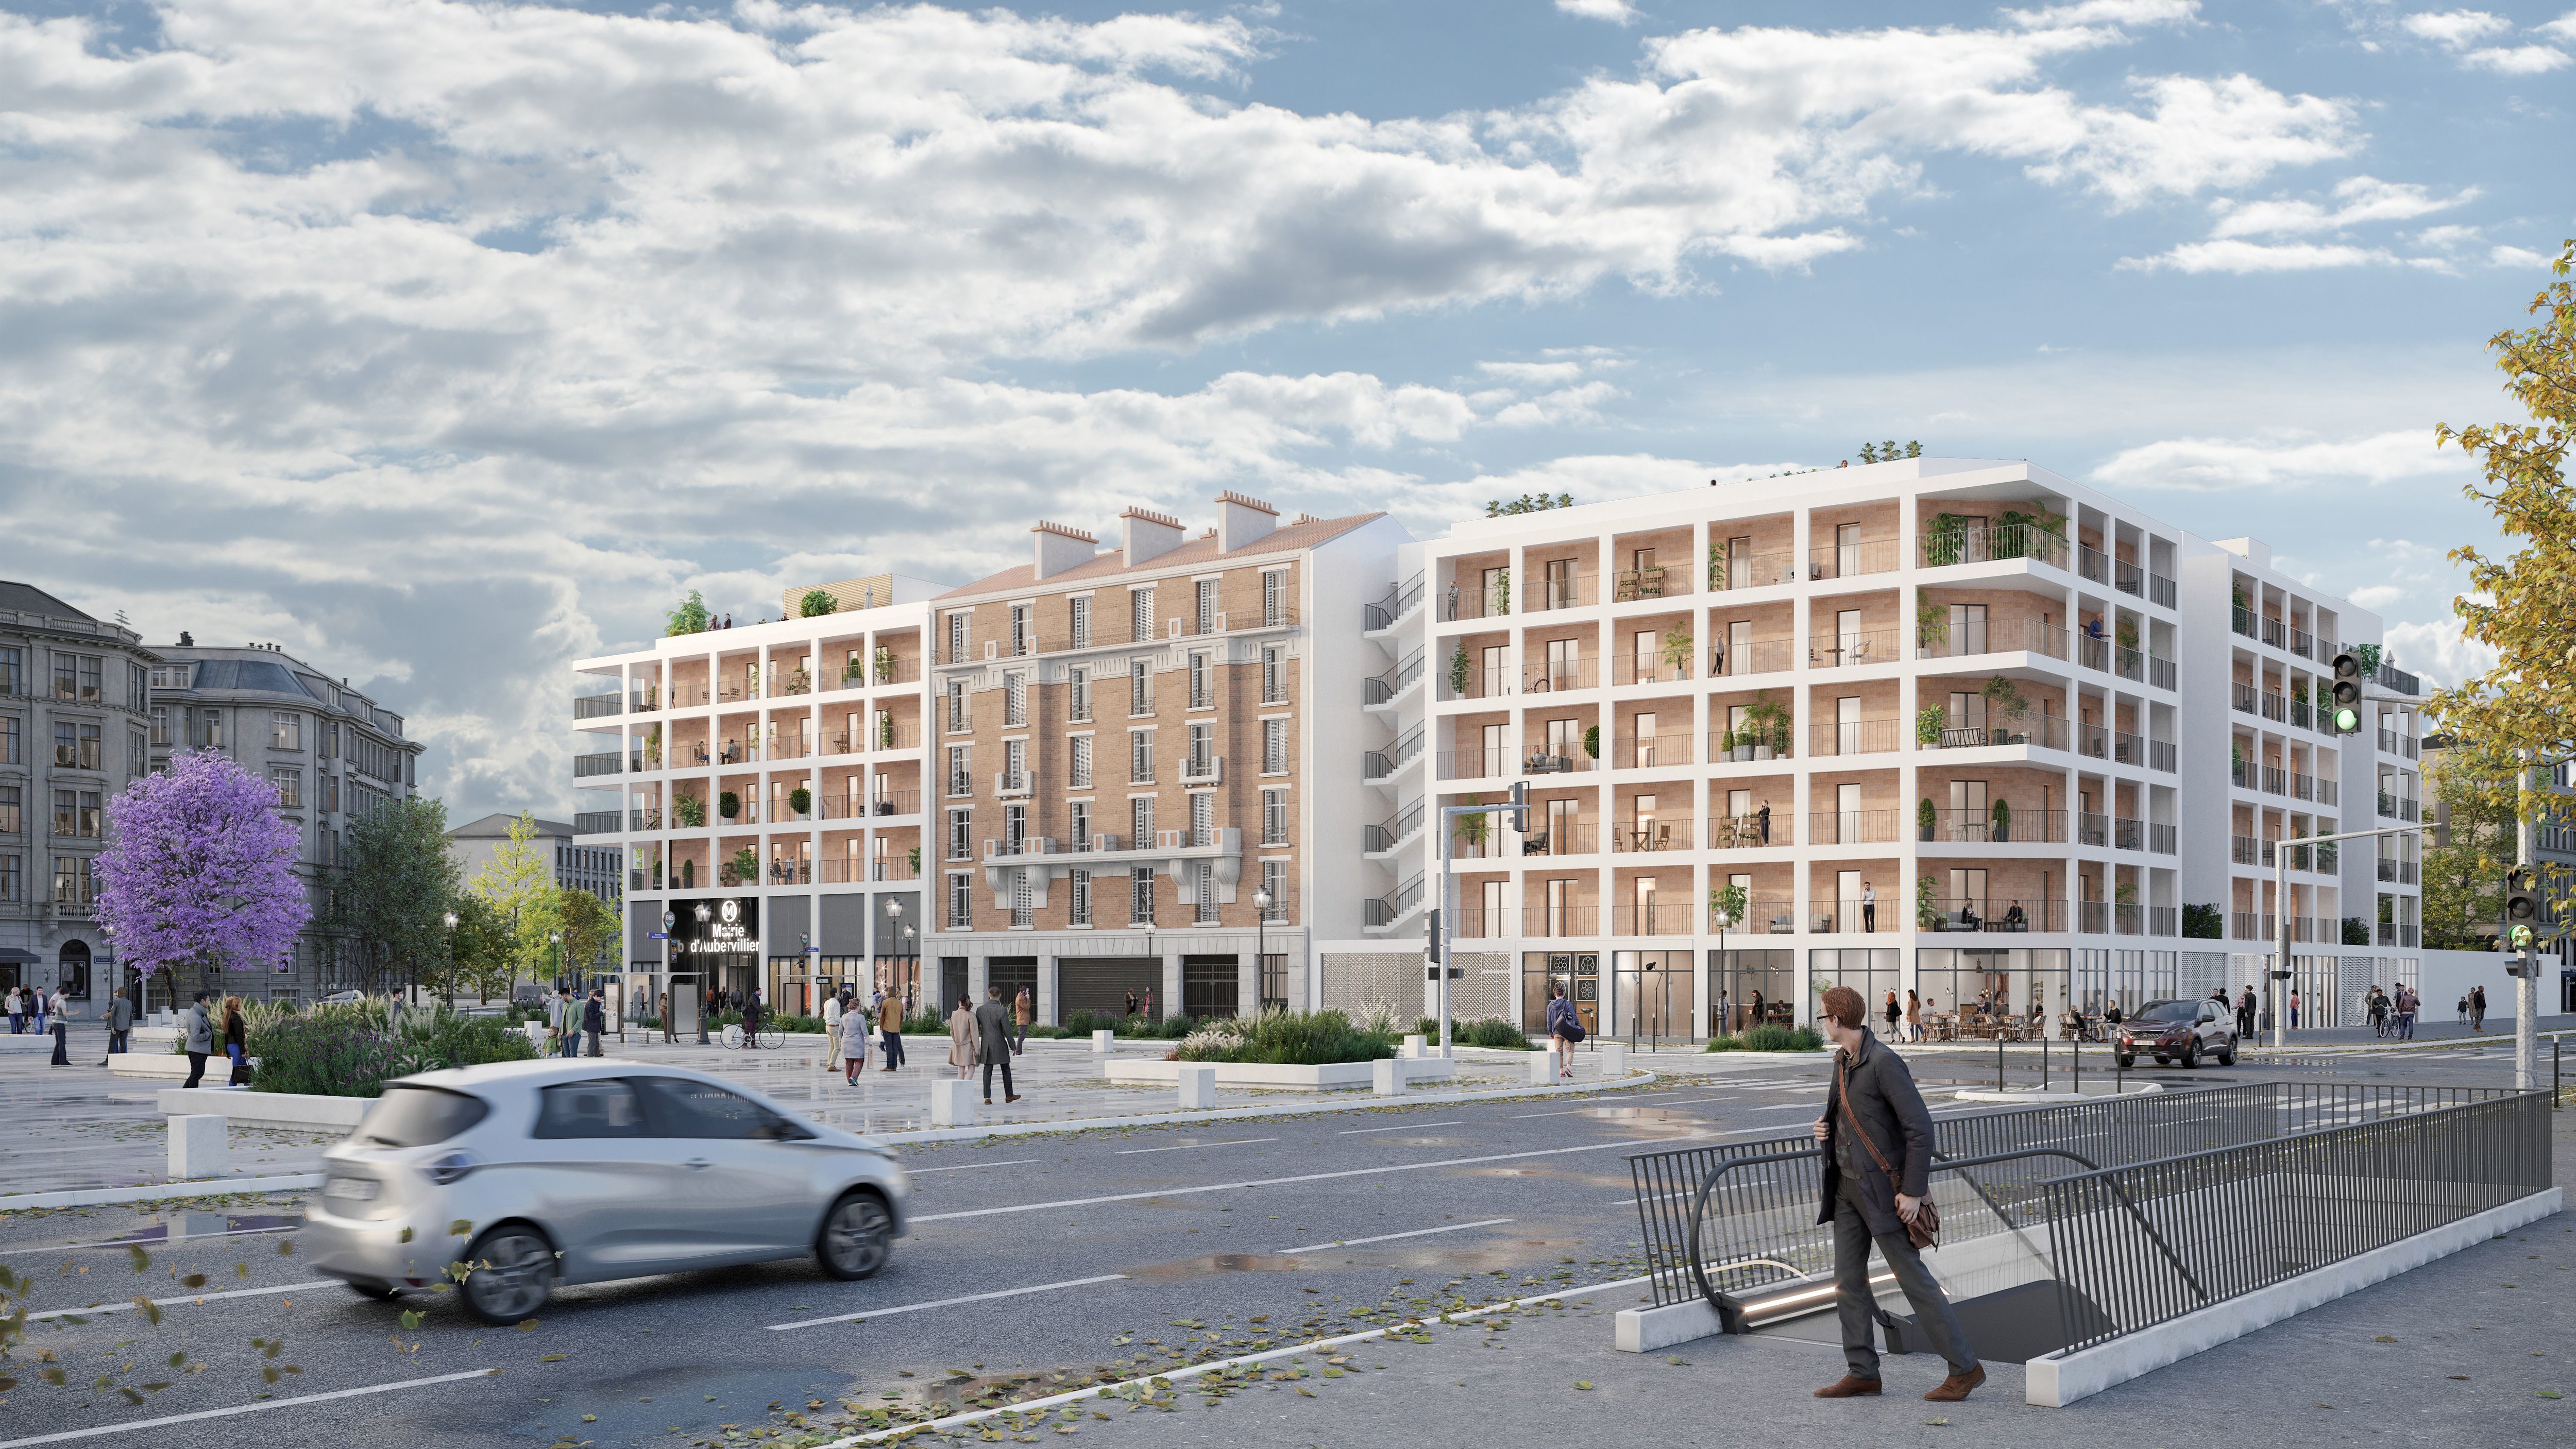 Vue de la future gare Mairie d'Aubervilliers et de son programme immobilier intégré. DR.